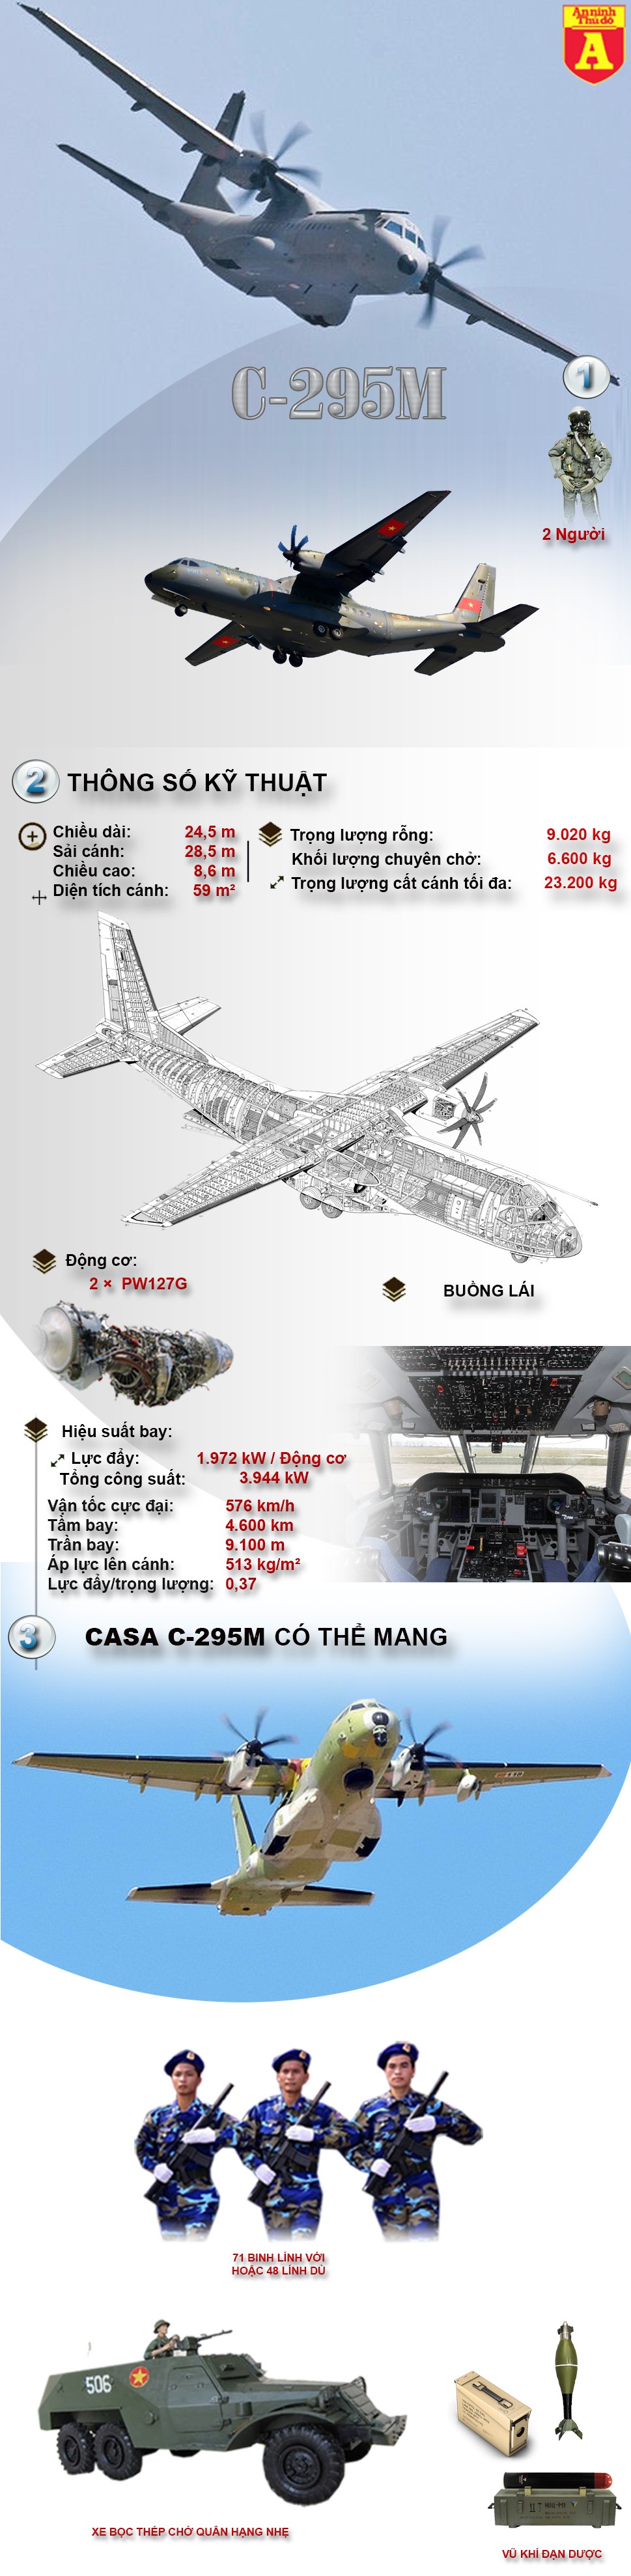 [Infographic] C-295M - Máy bay vận tải tốt nhất của Không quân Nhân dân Việt Nam ảnh 2